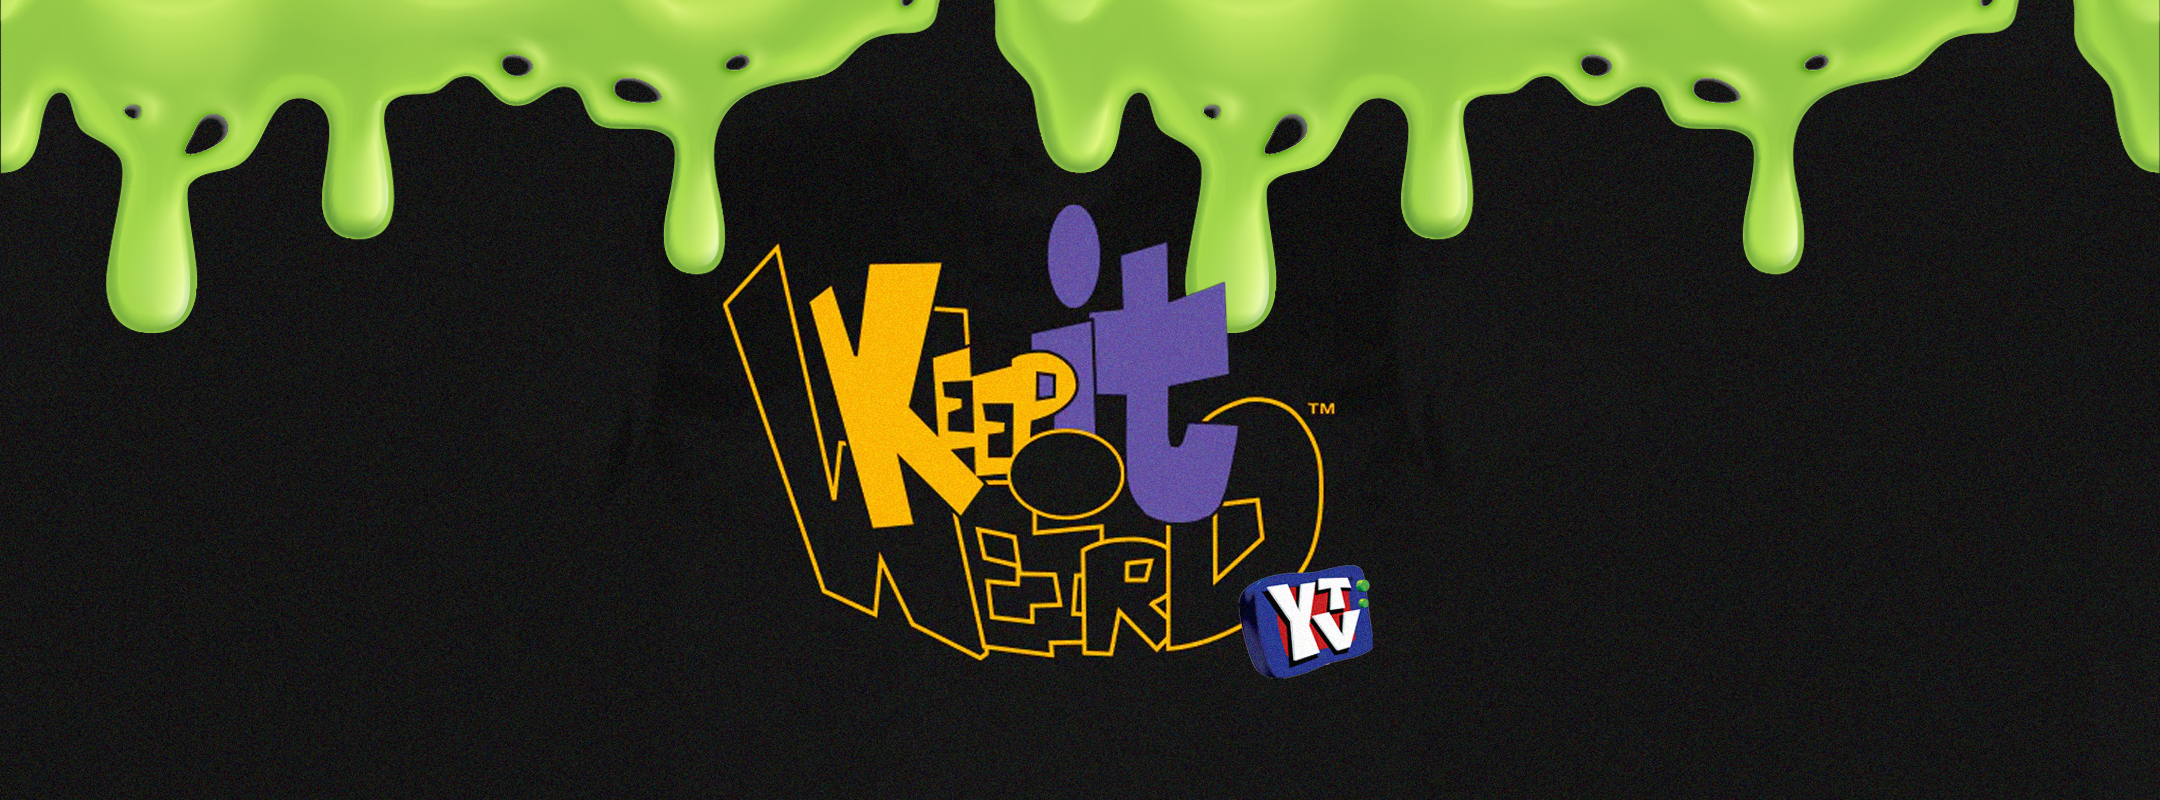 YTV 'Keep It Weird'